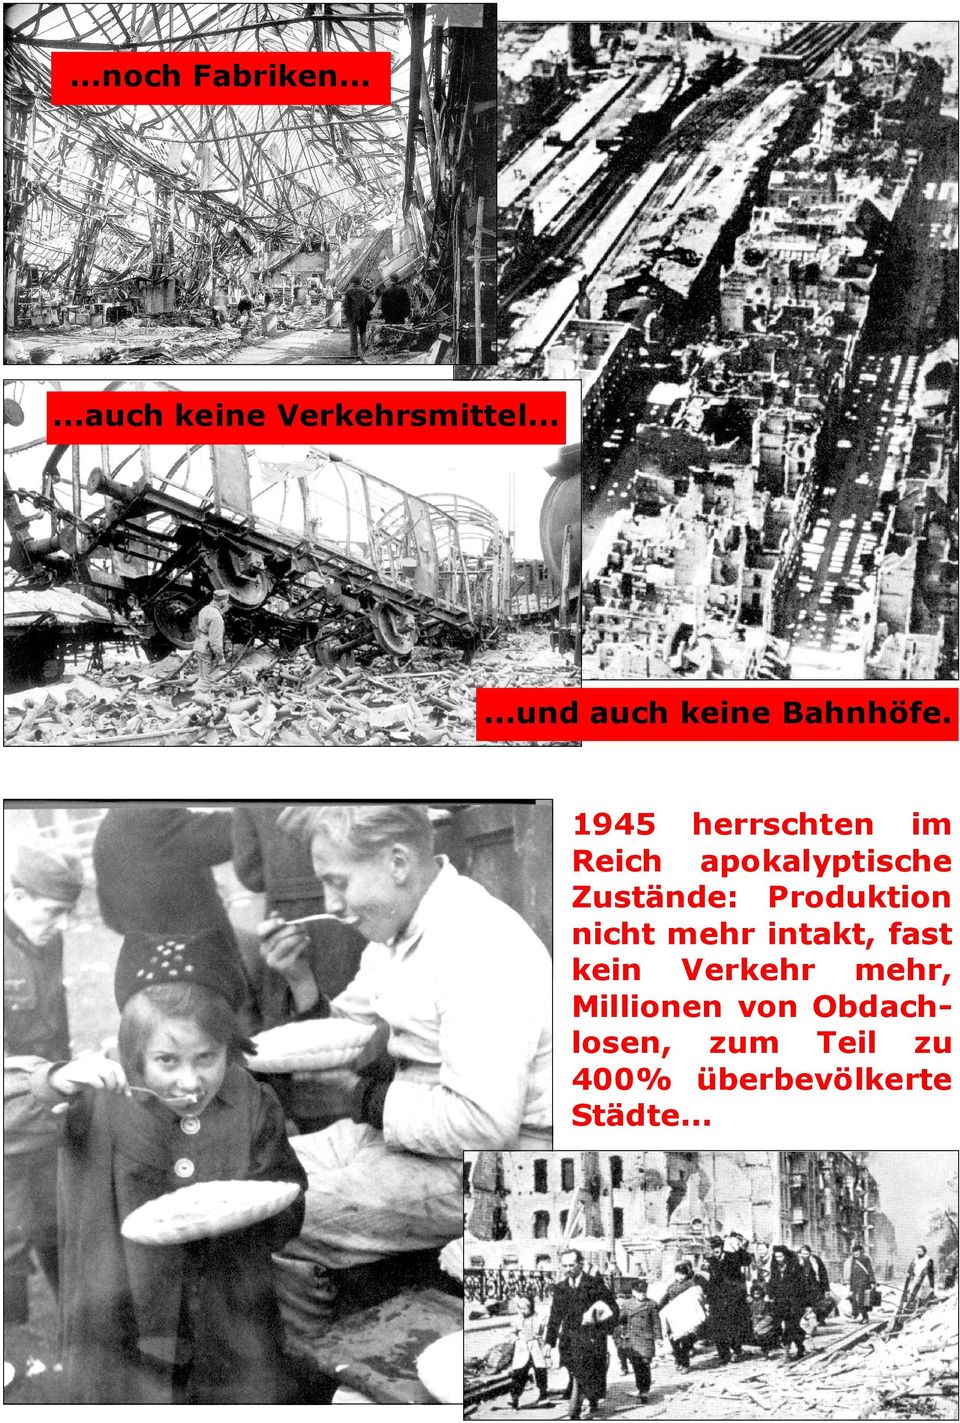 1945 herrschten im Reich apokalyptische Zustände: Produktion